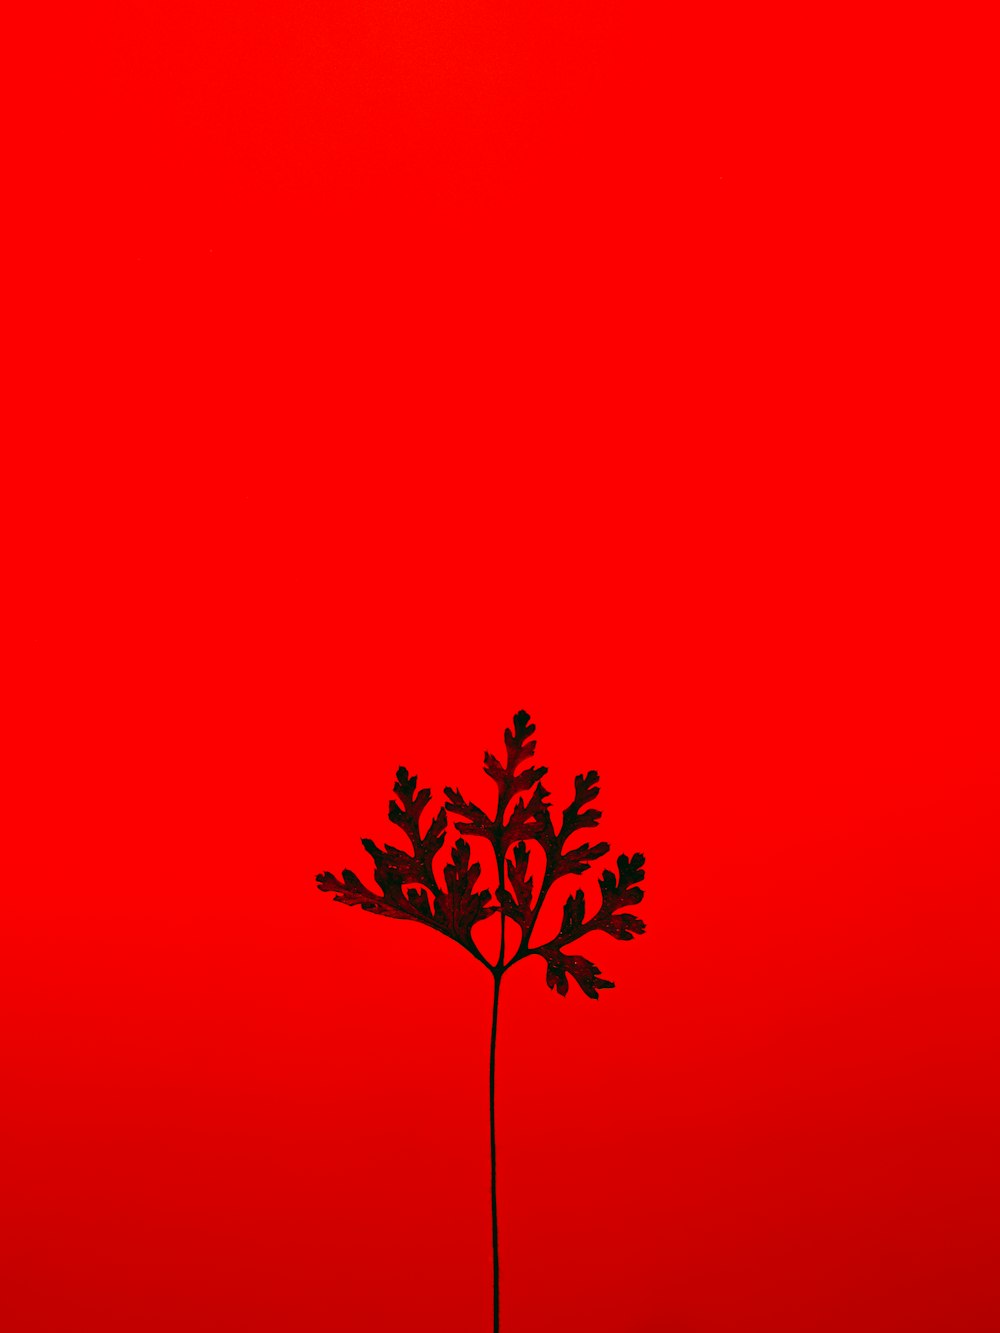 árbol rojo y negro con fondo rojo